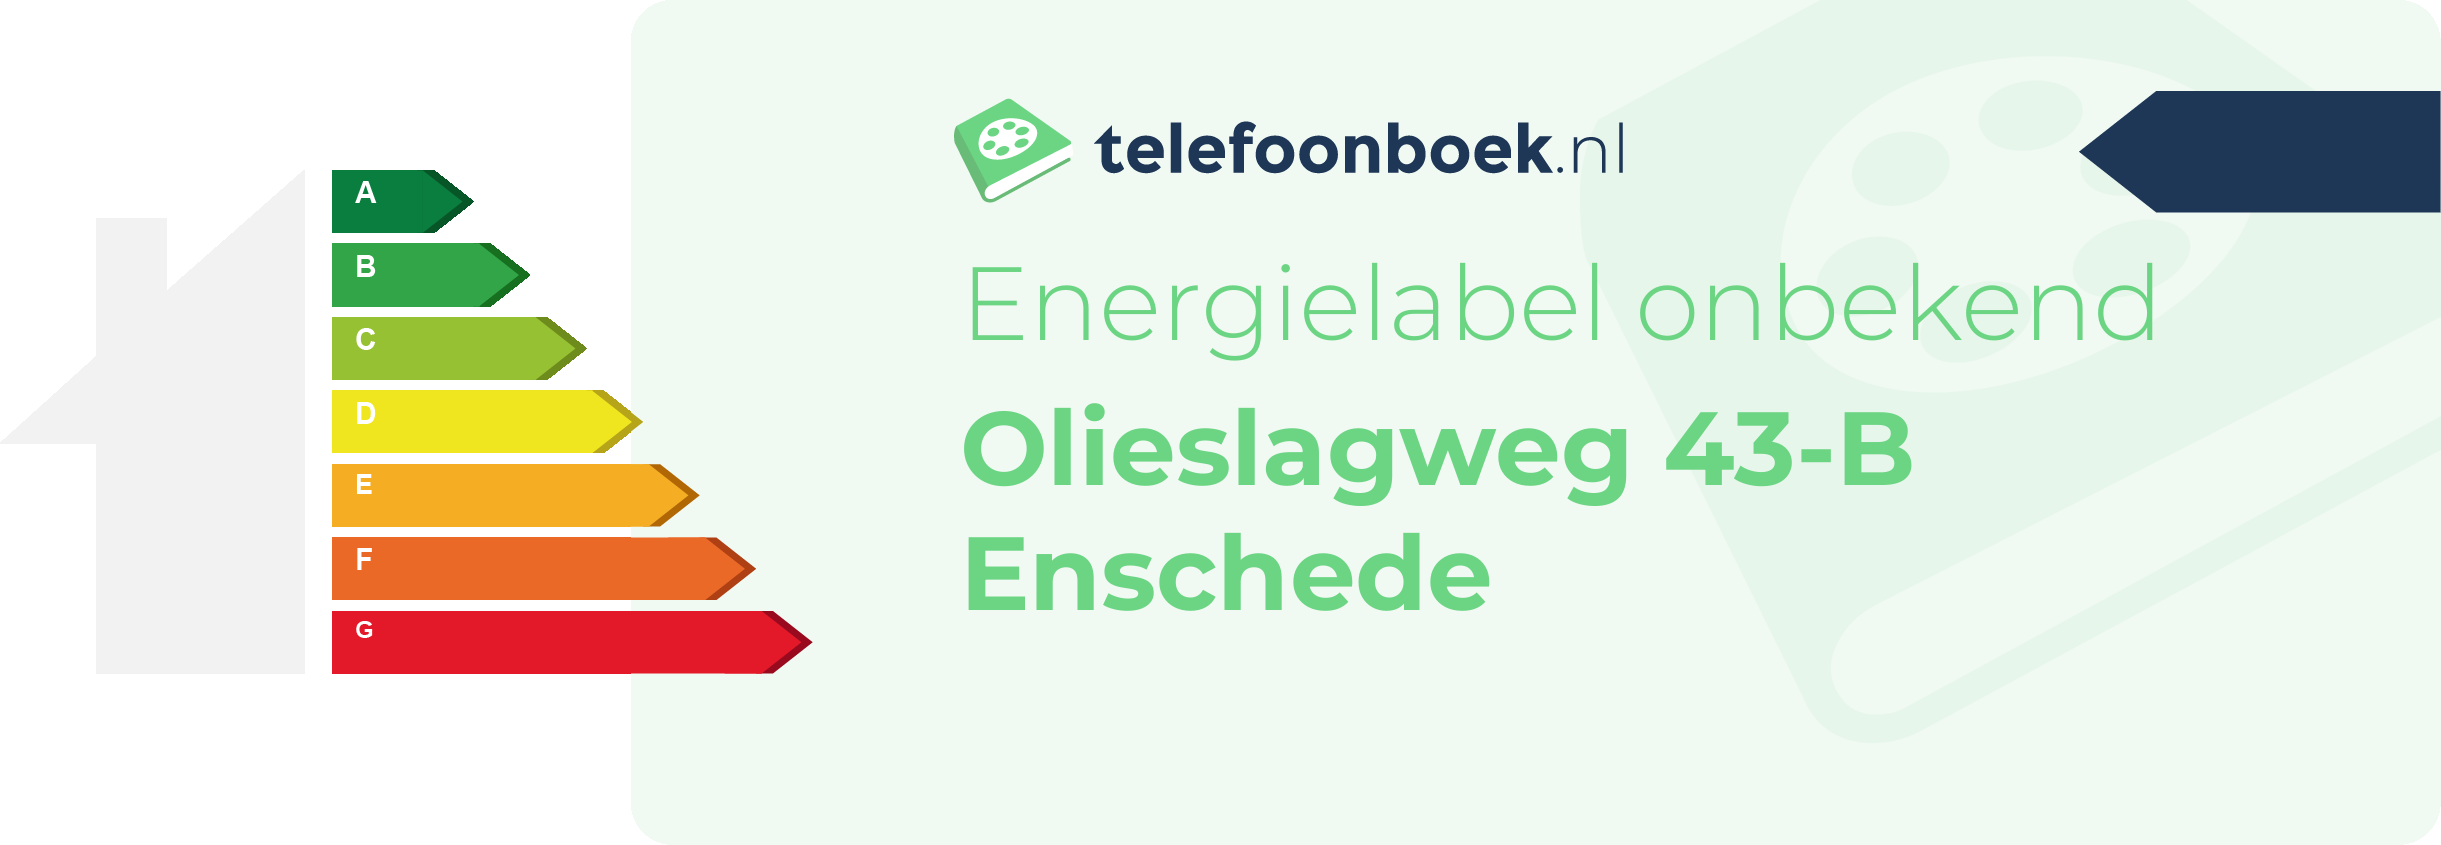 Energielabel Olieslagweg 43-B Enschede